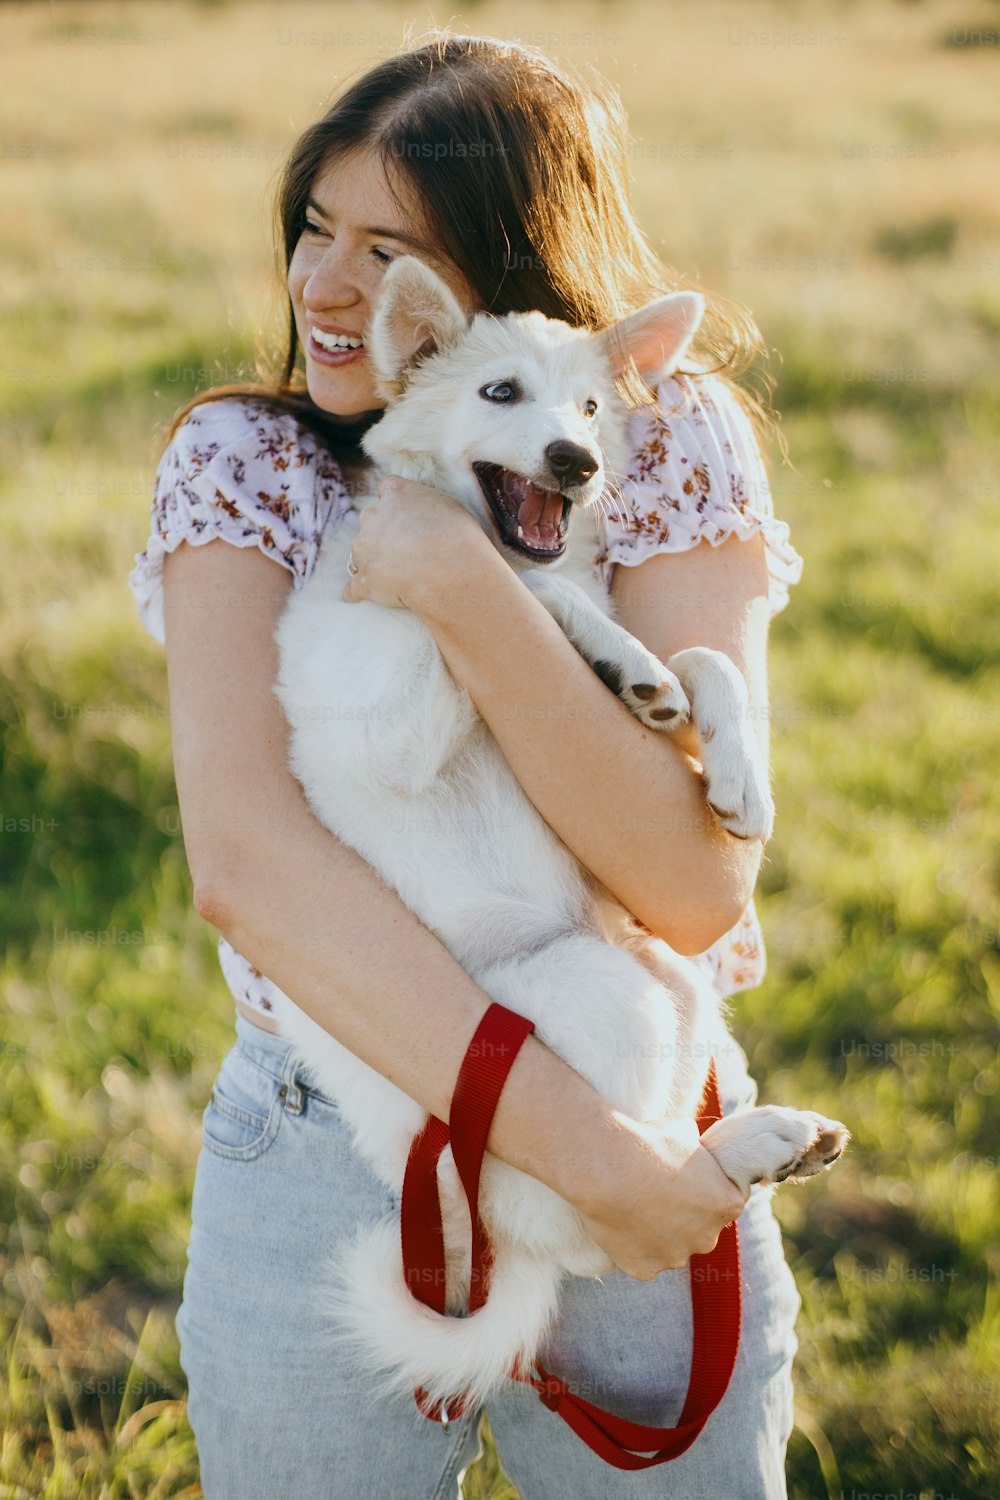 Mulher feliz elegante abraçando filhote de cachorro branco engraçado bonito na luz quente do pôr do sol no prado de verão. Fêmea jovem casual brincando com adorável pastor suíço filhote fofo. Belos momentos engraçados